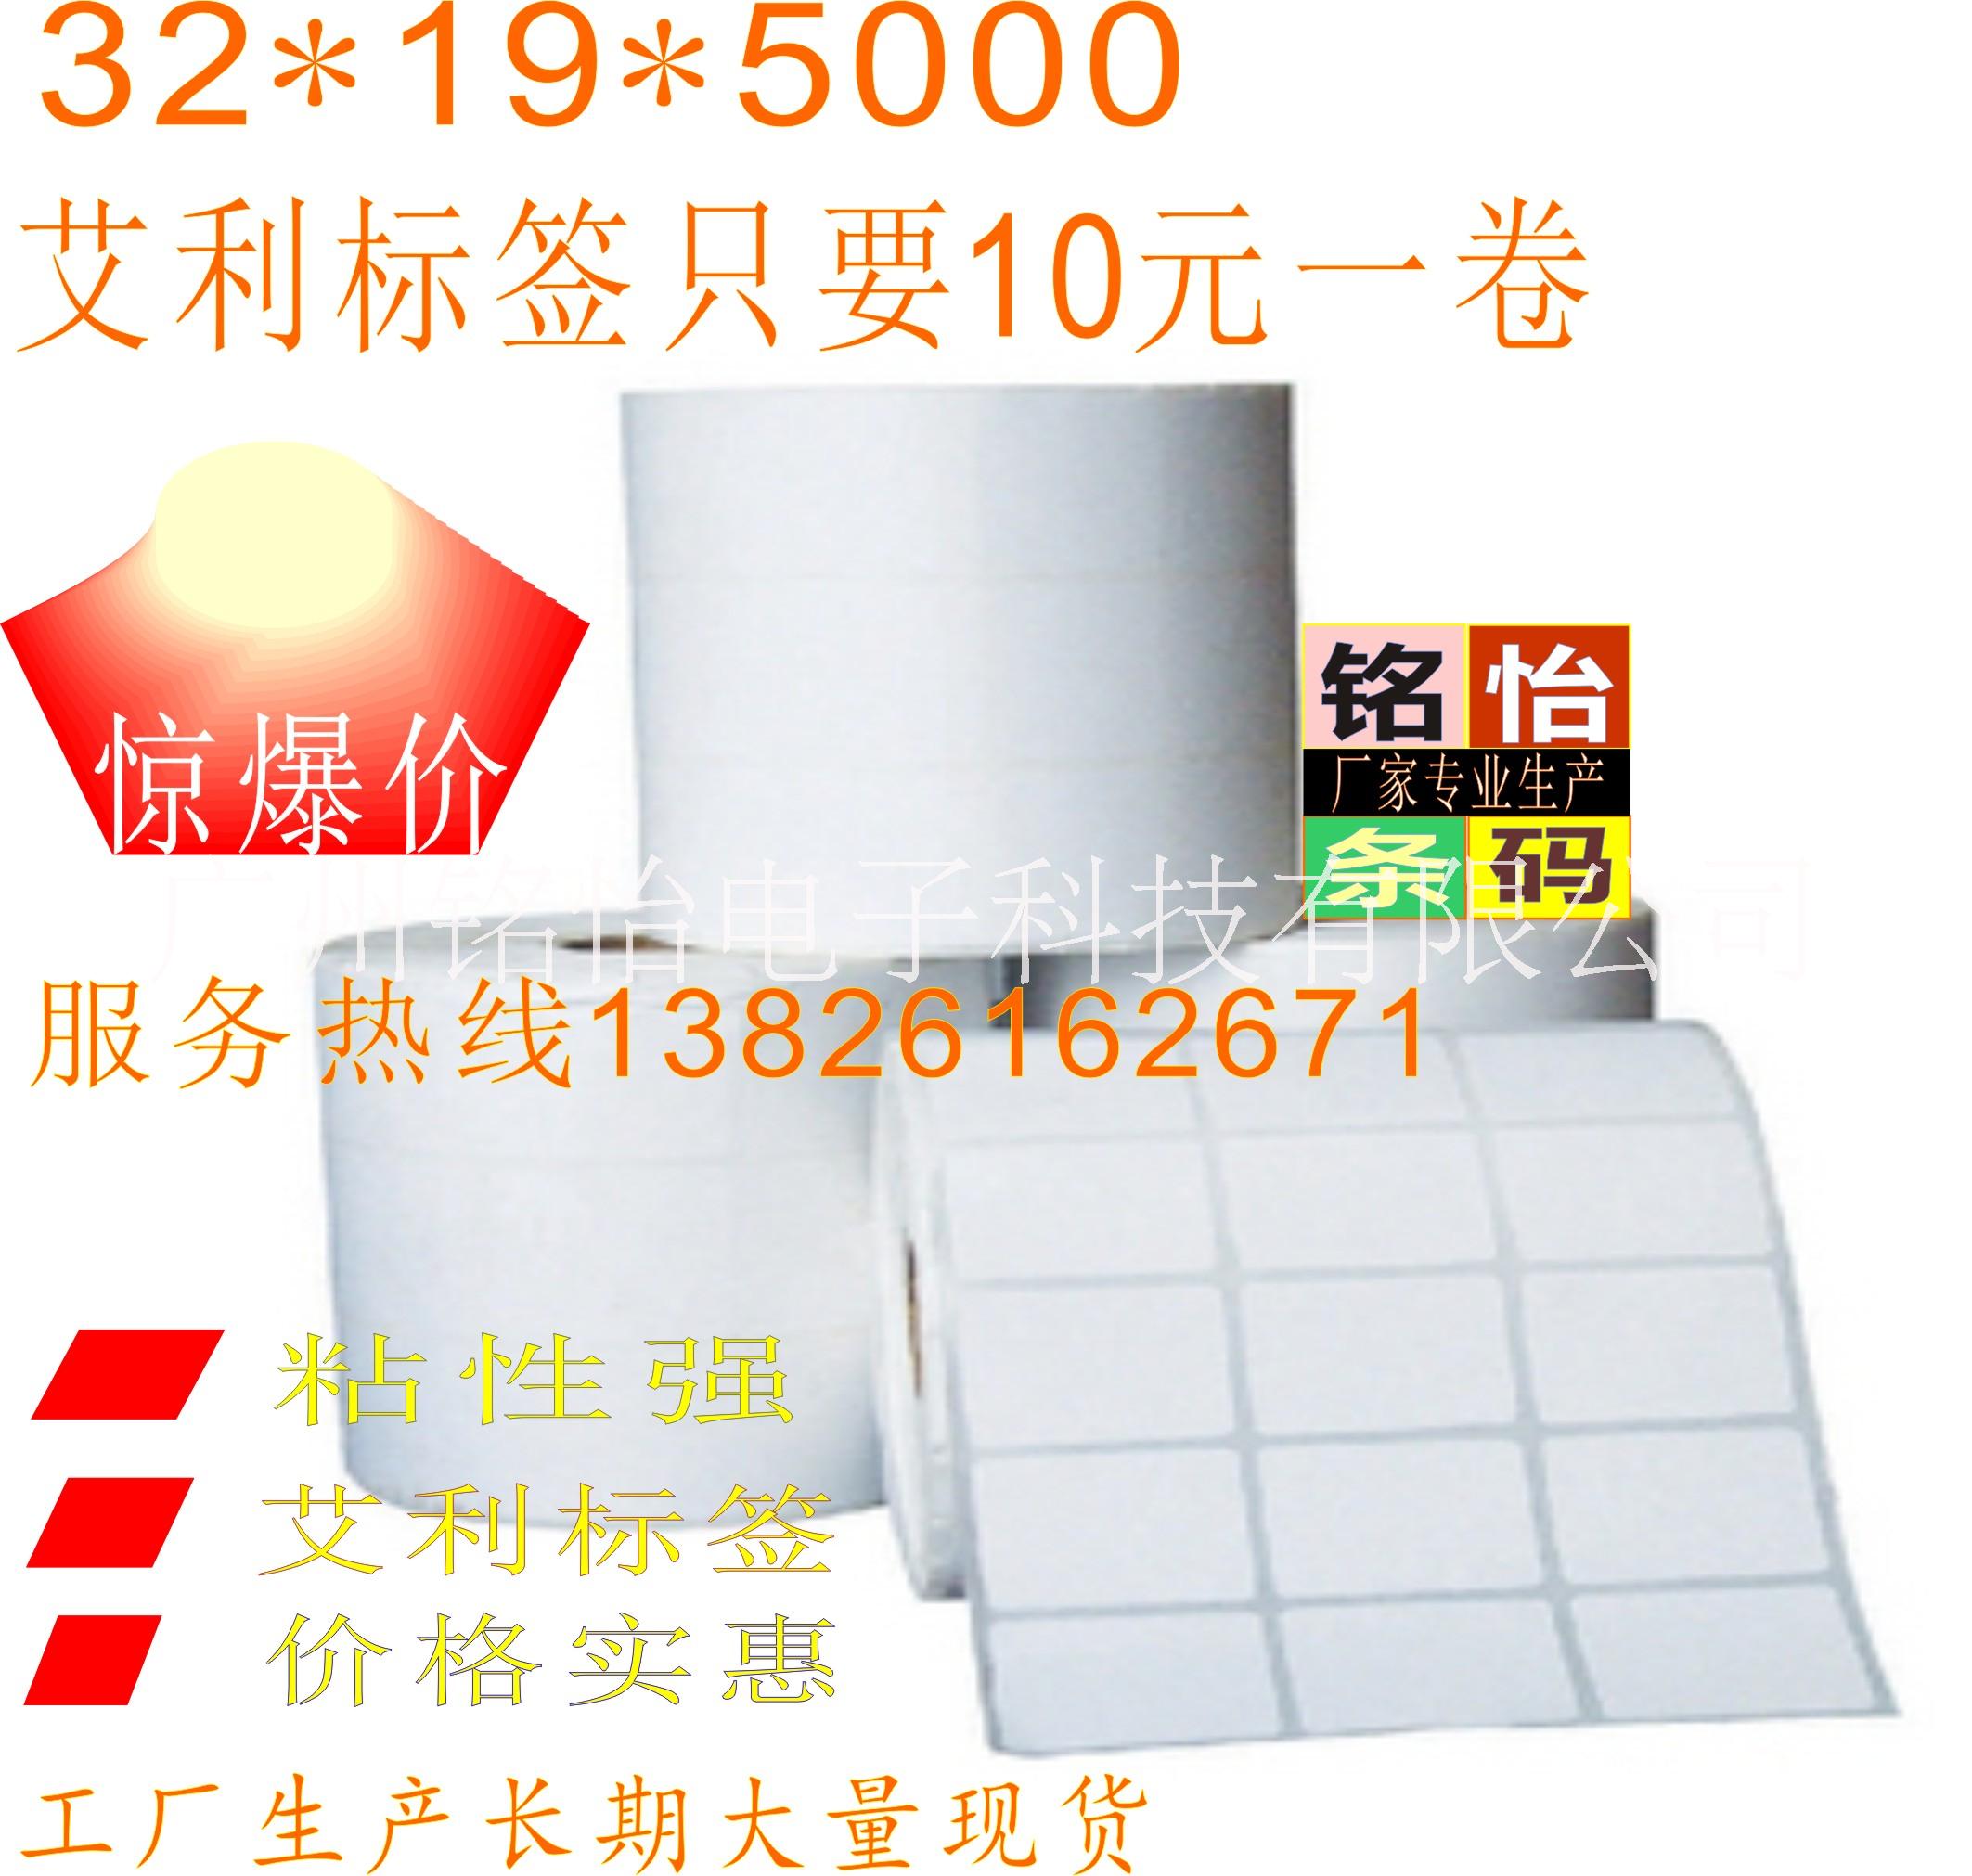 条码纸 标签纸 空白标签纸 不干胶标签 广州厂家专业生产图片